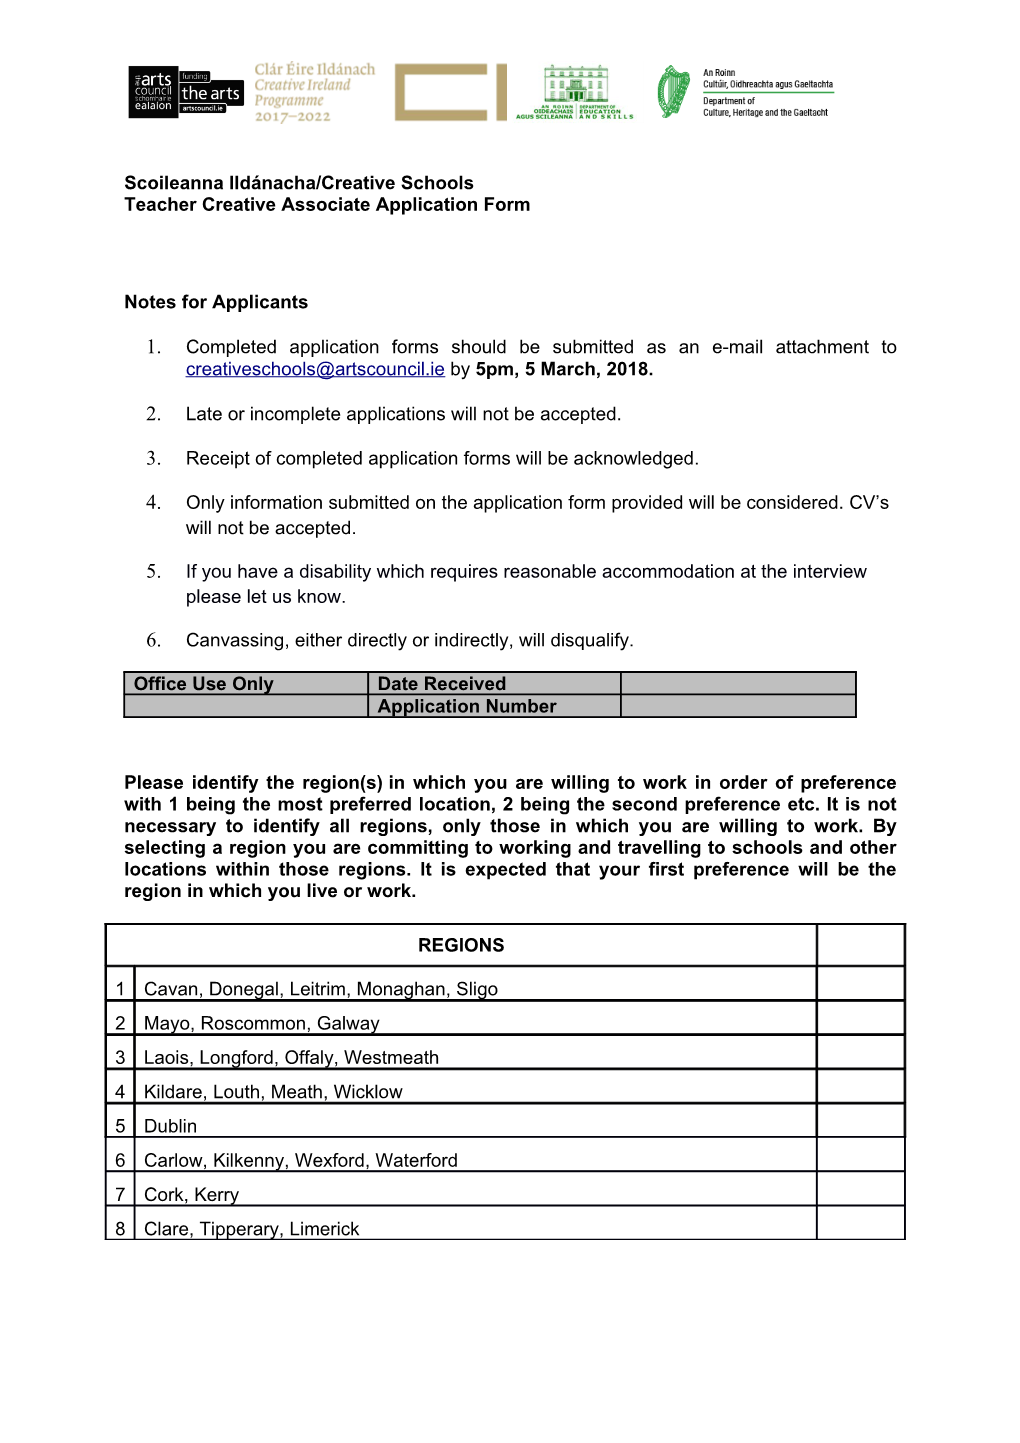 Teacher Creative Associate Application Form